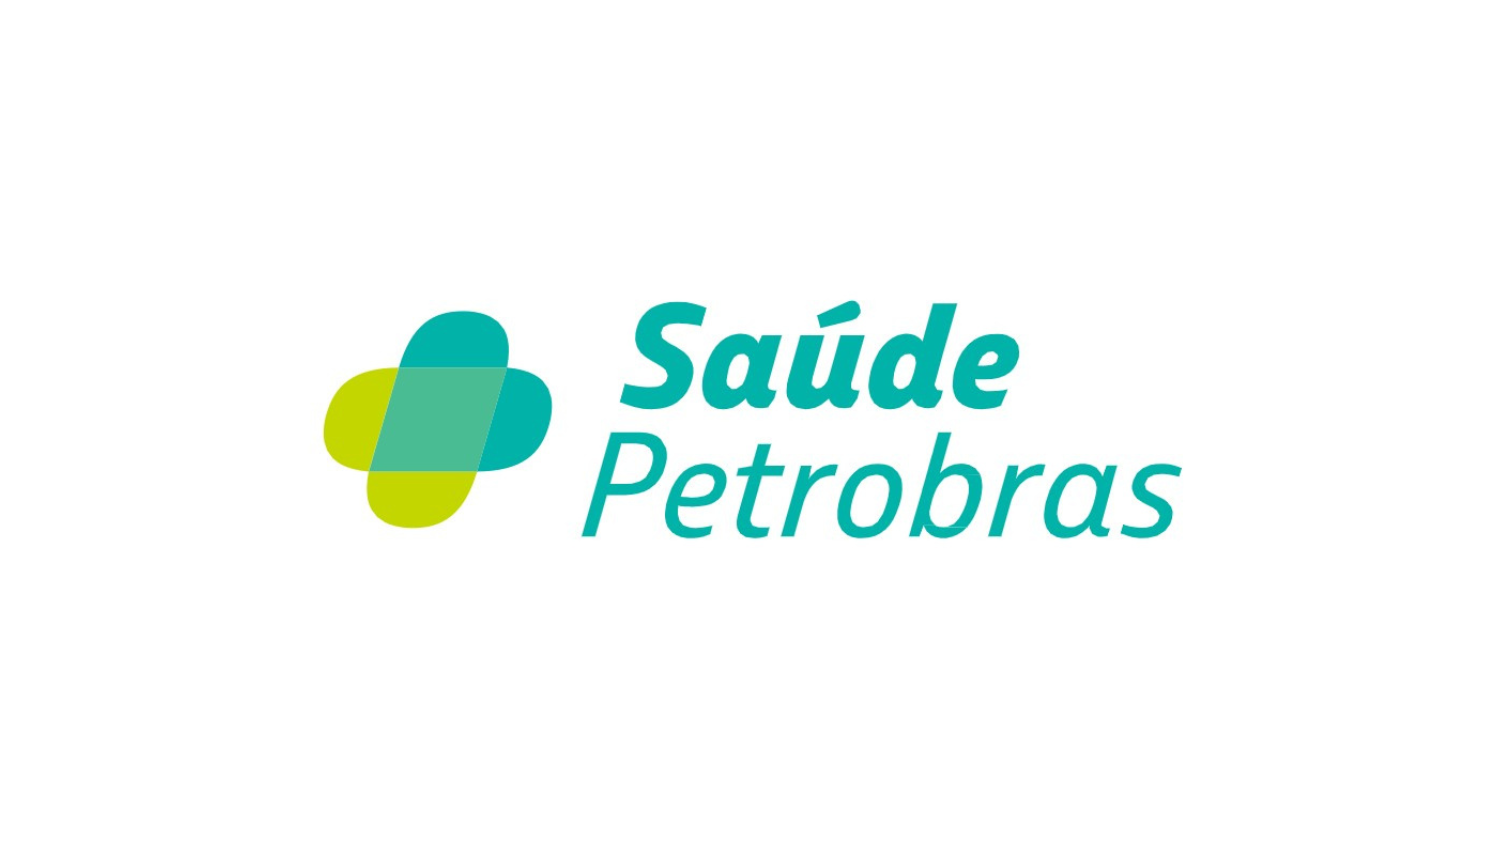 Saúde Petrobras